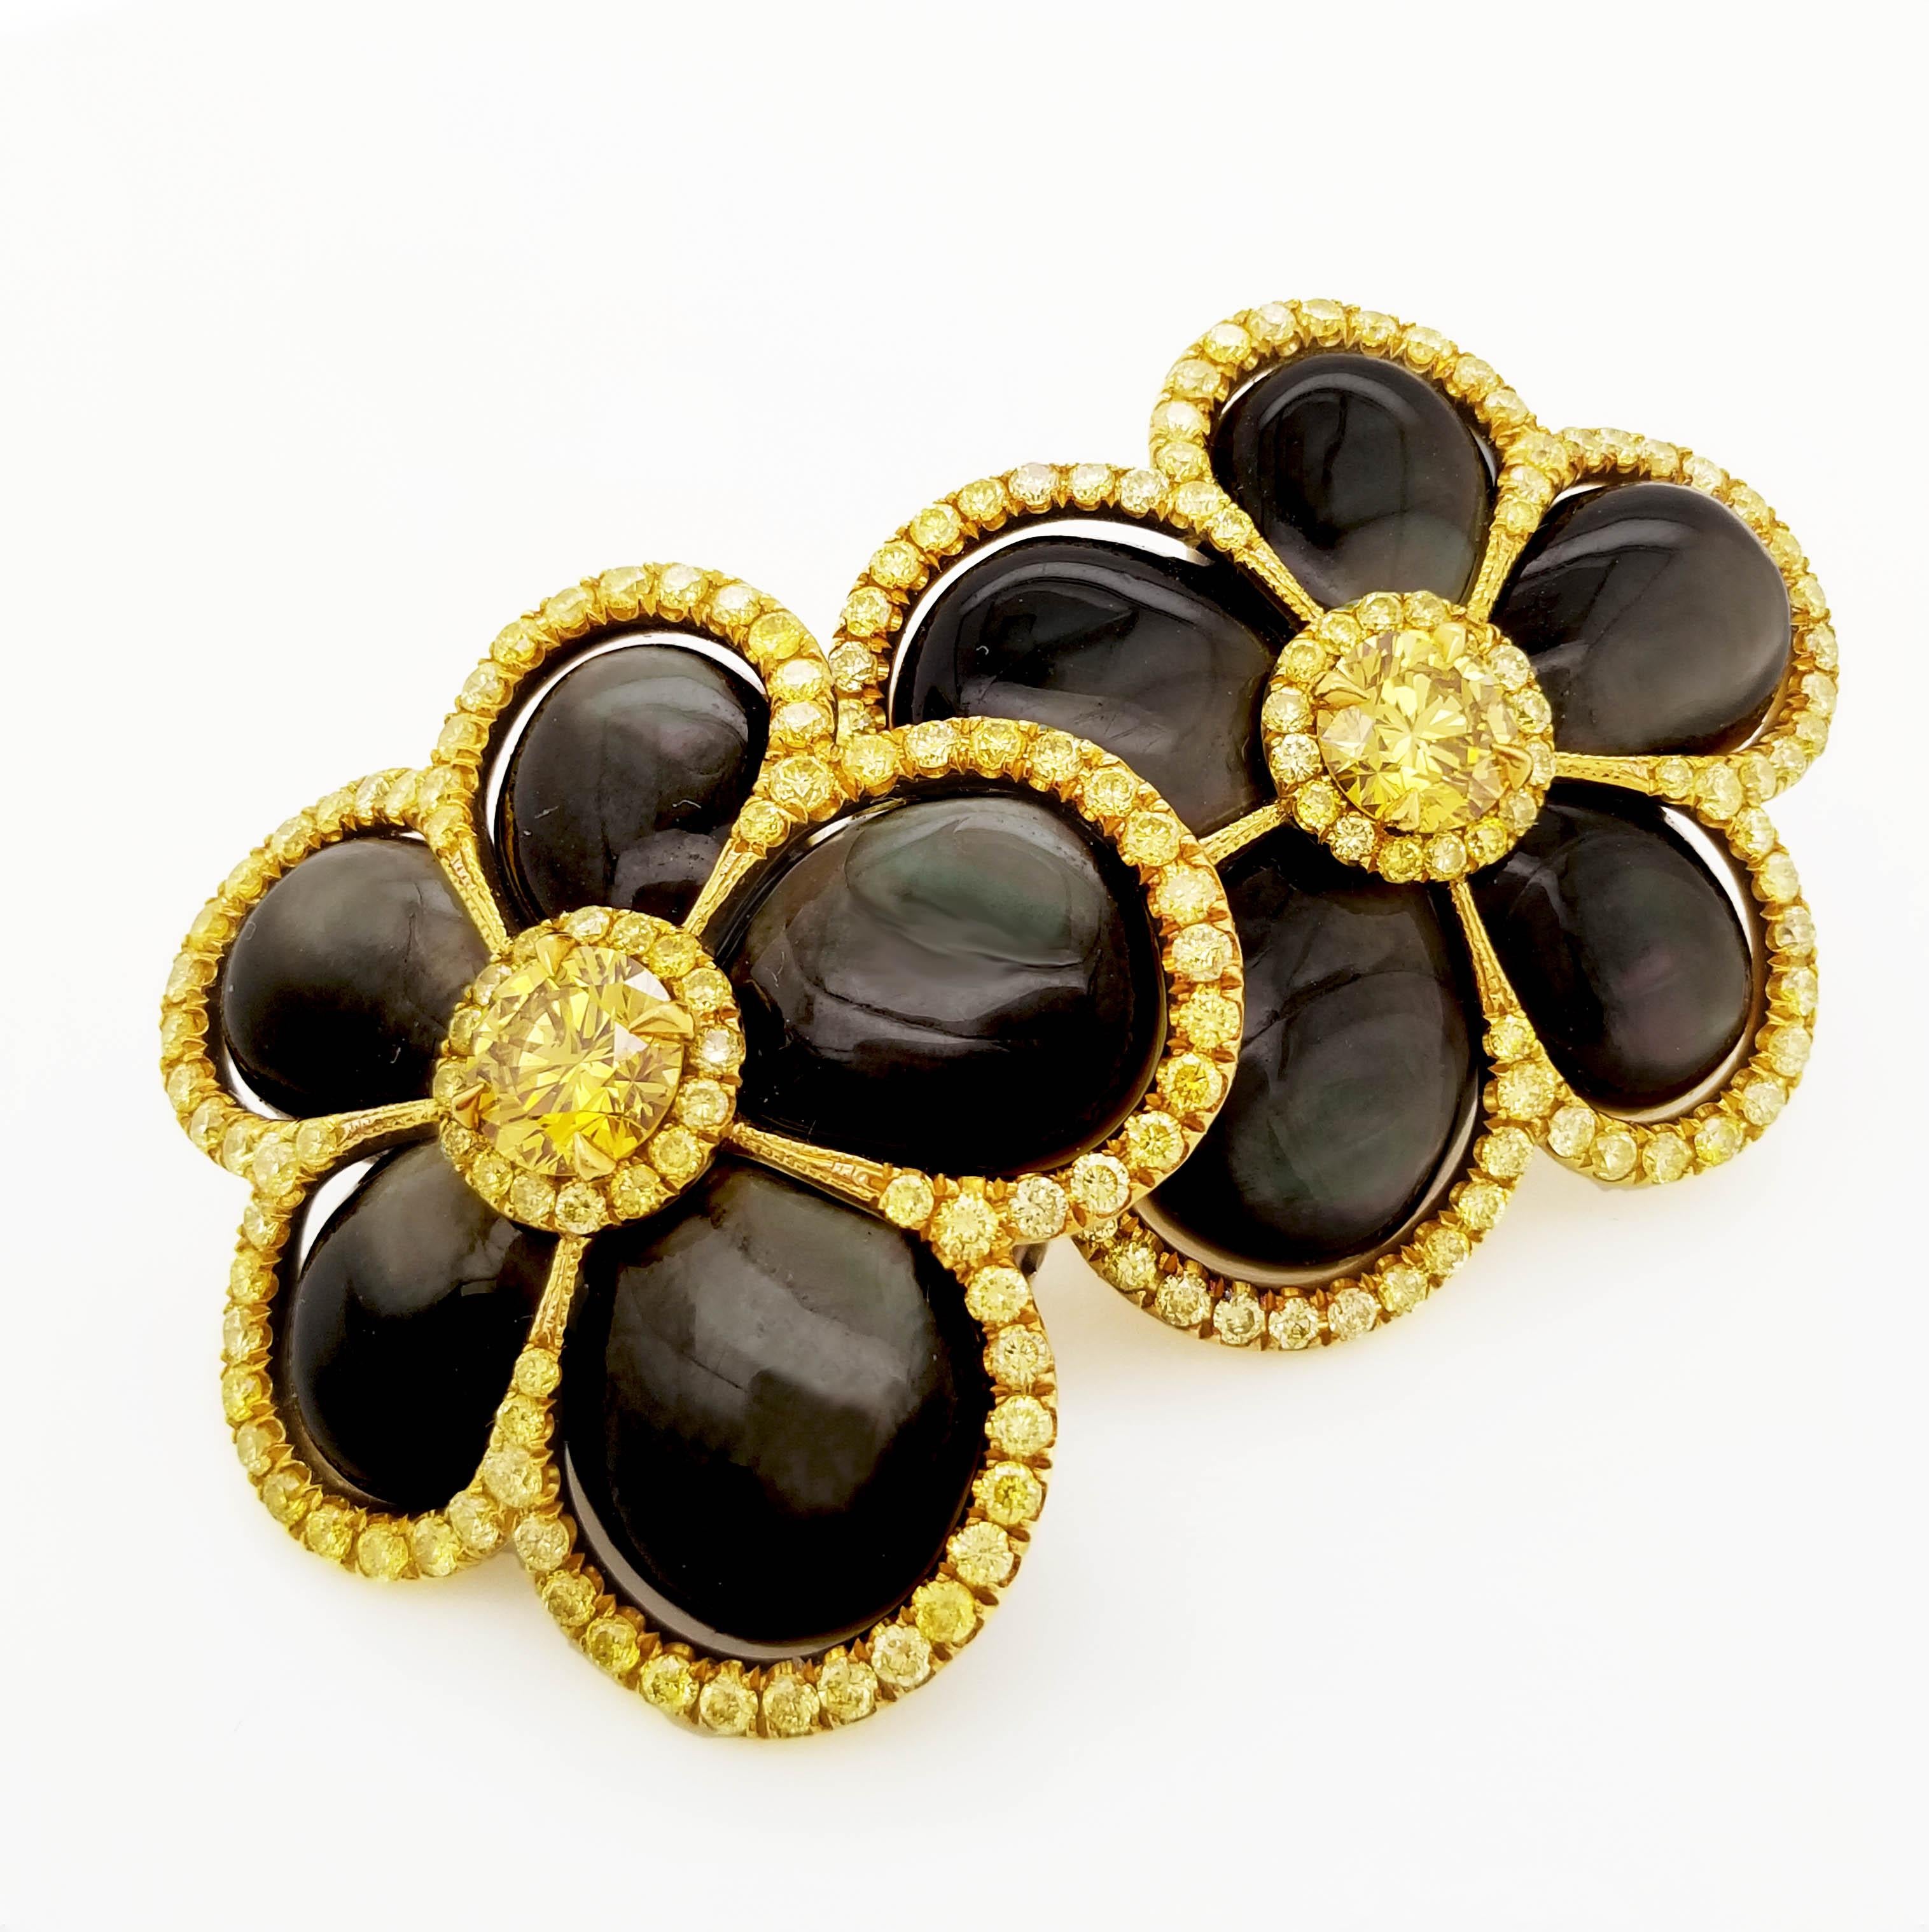 Aus der Collection'S Scarselli Couture stammen diese erstaunlich tragbaren Ohrringe mit ausgefallenen gelben Diamanten von je ca. 0,40 ct. Mit GIA-Zertifikat (detaillierte Informationen zu den Steinen finden Sie in den Zertifikaten). Die